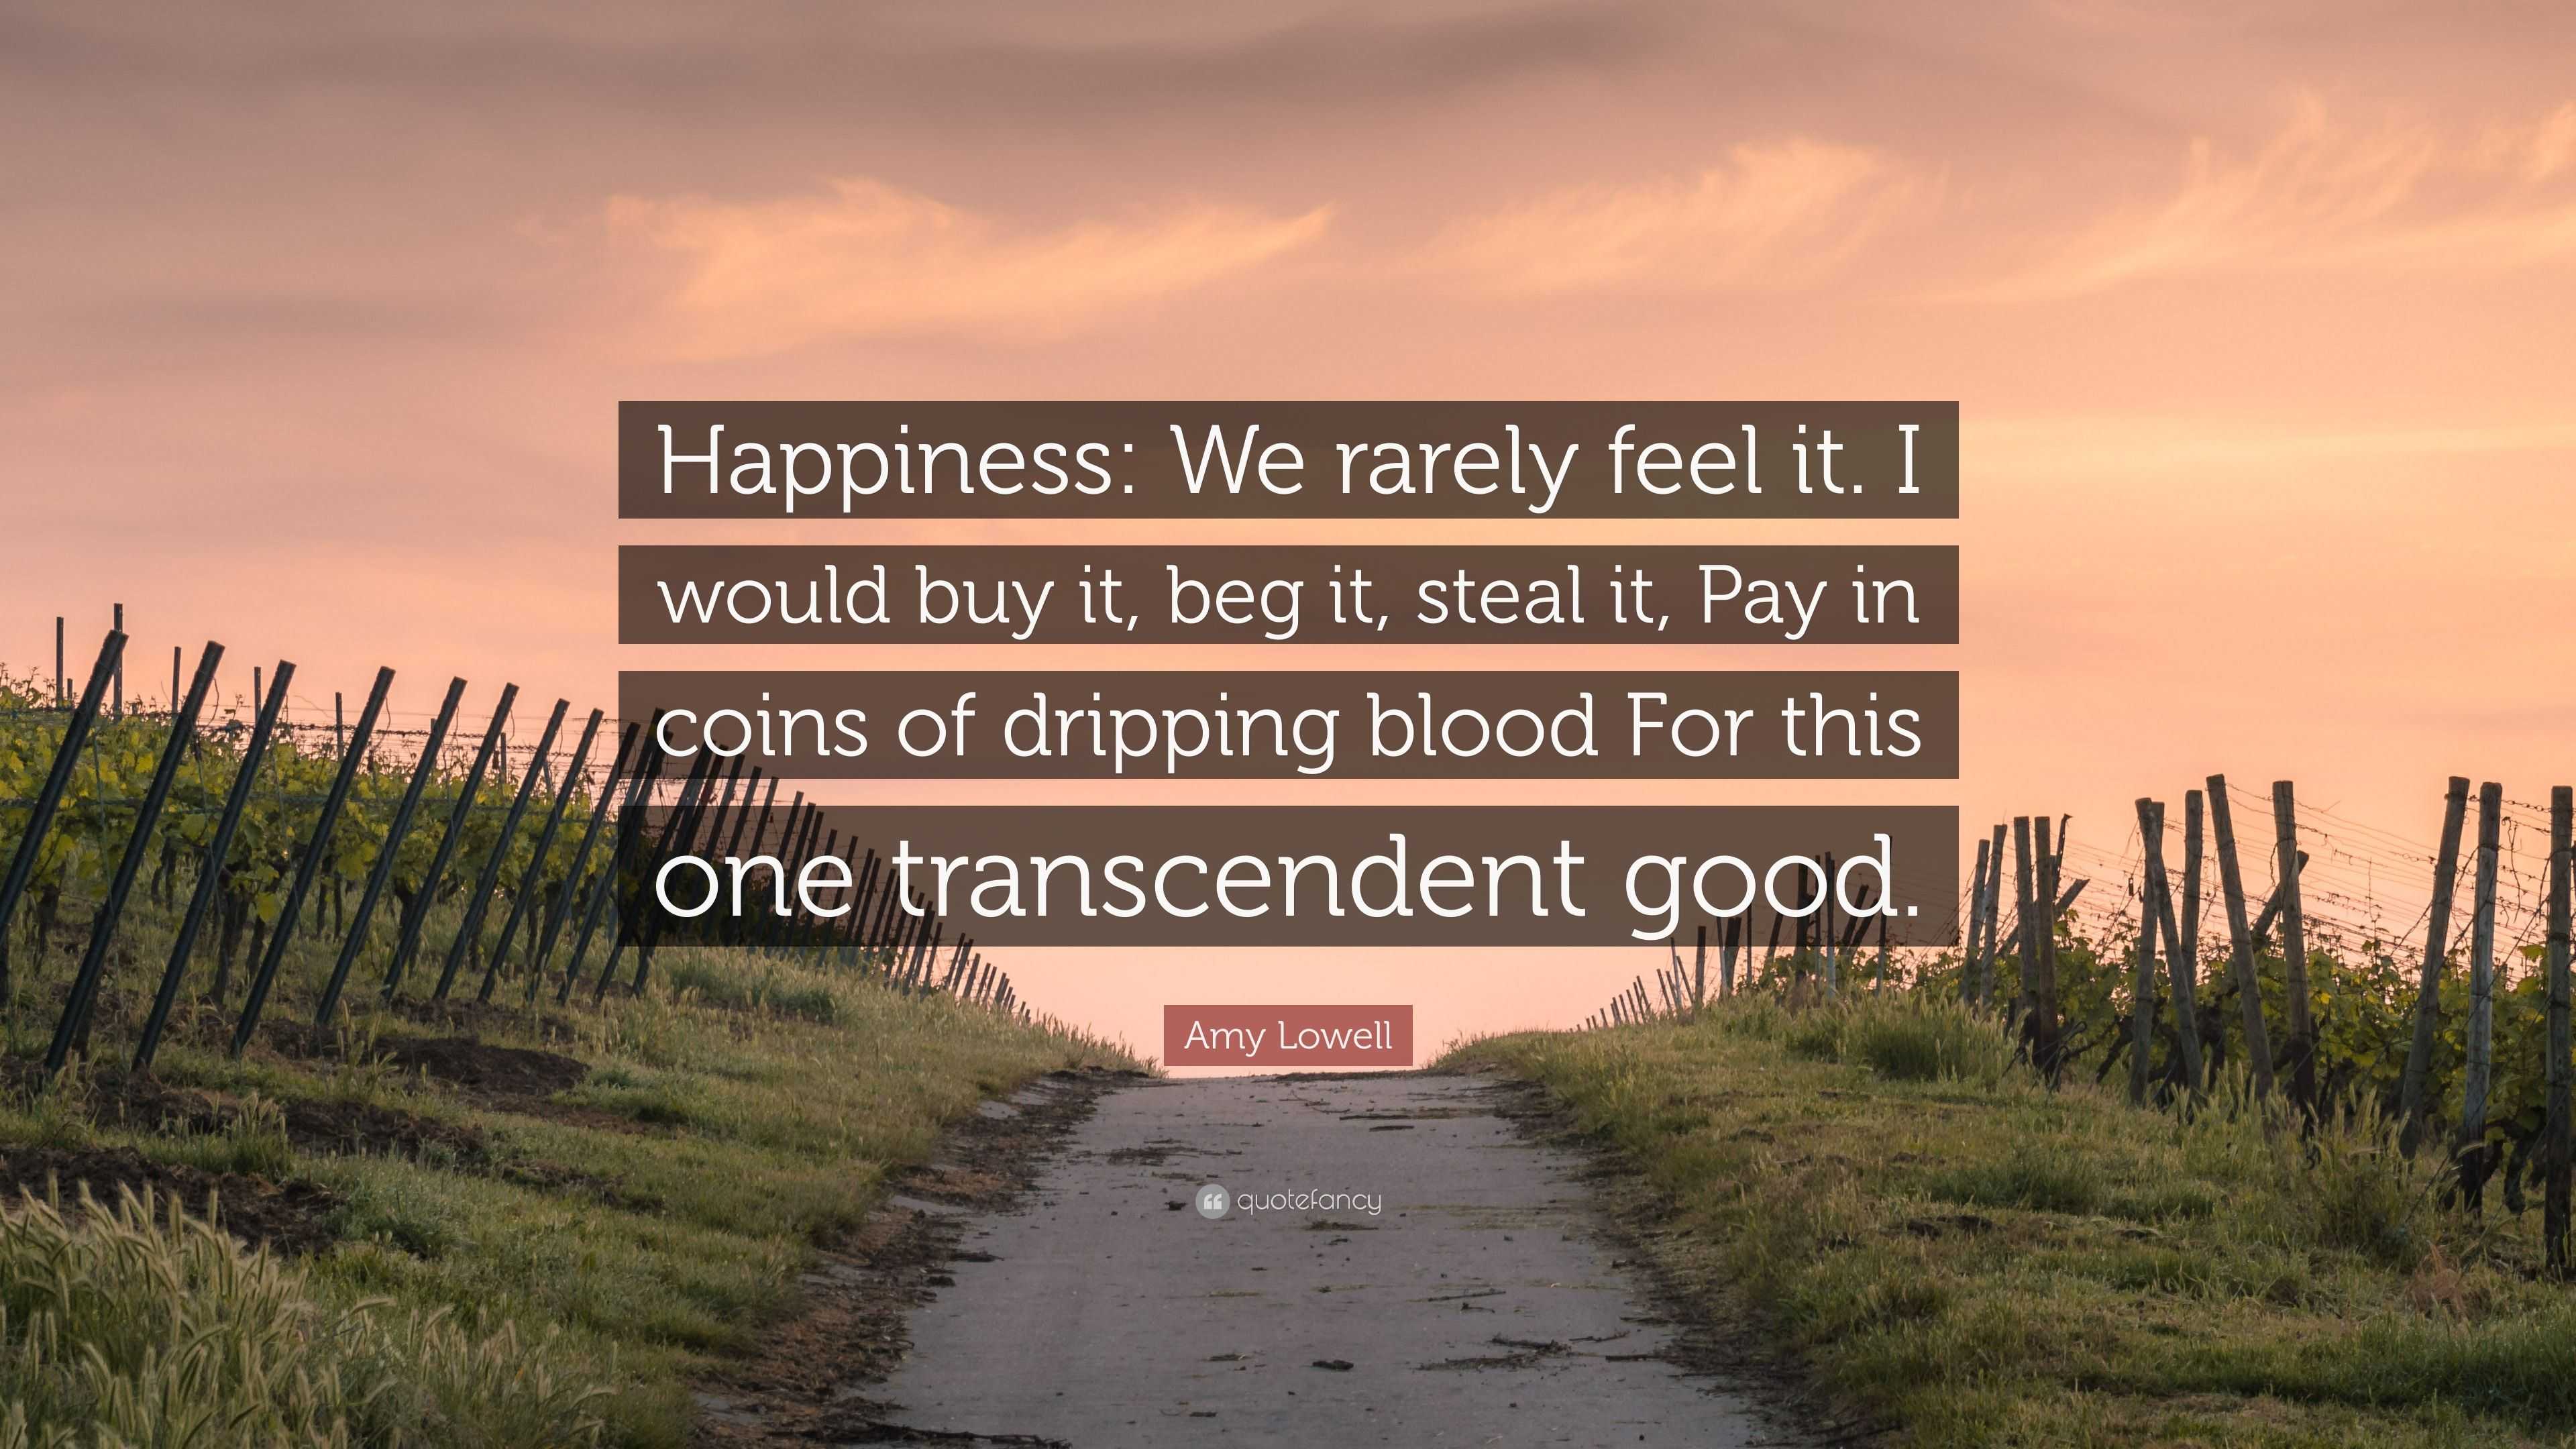 Kelly Francisco on X: #balance #harmony #life #quotes #happiness